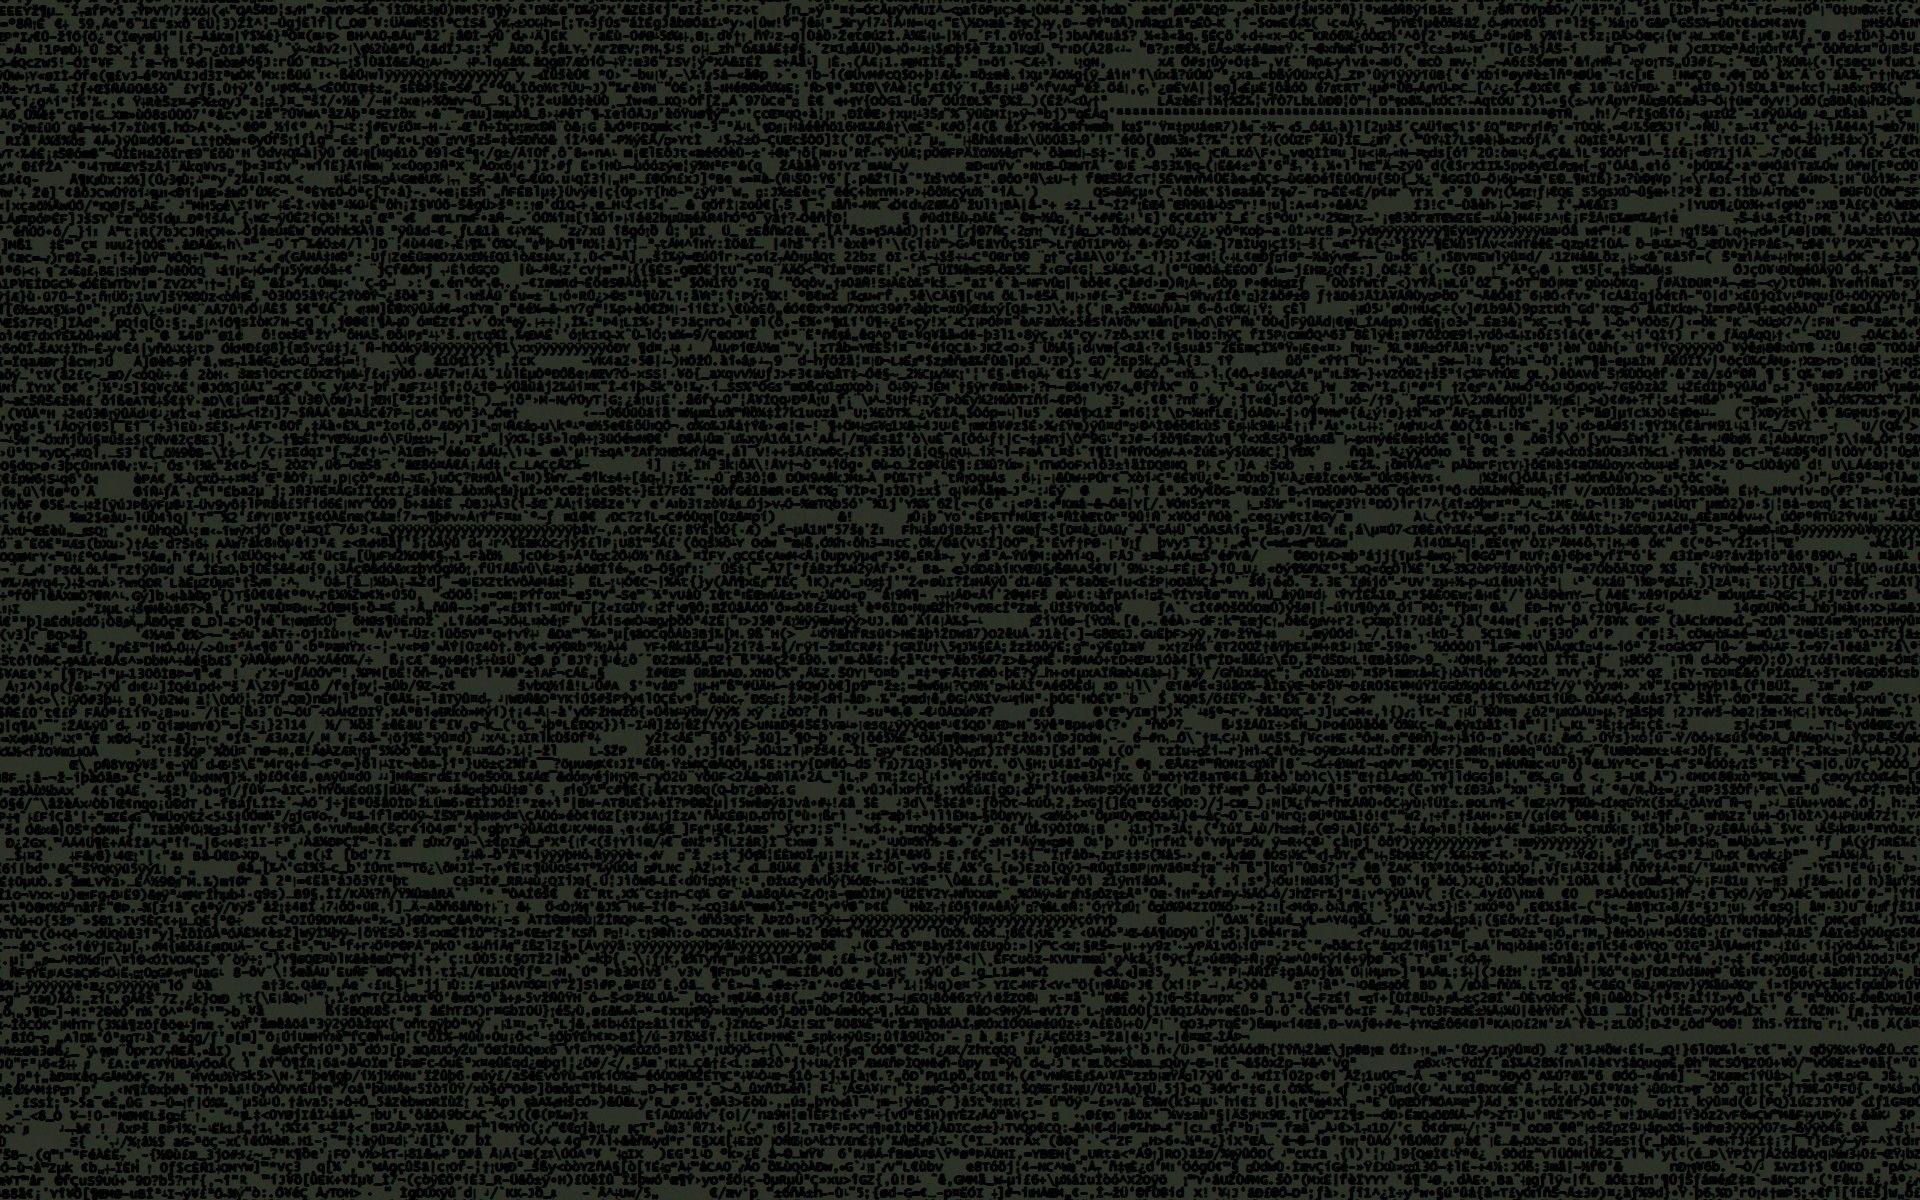 Dark Code Wallpapers - Top Free Dark Code Backgrounds